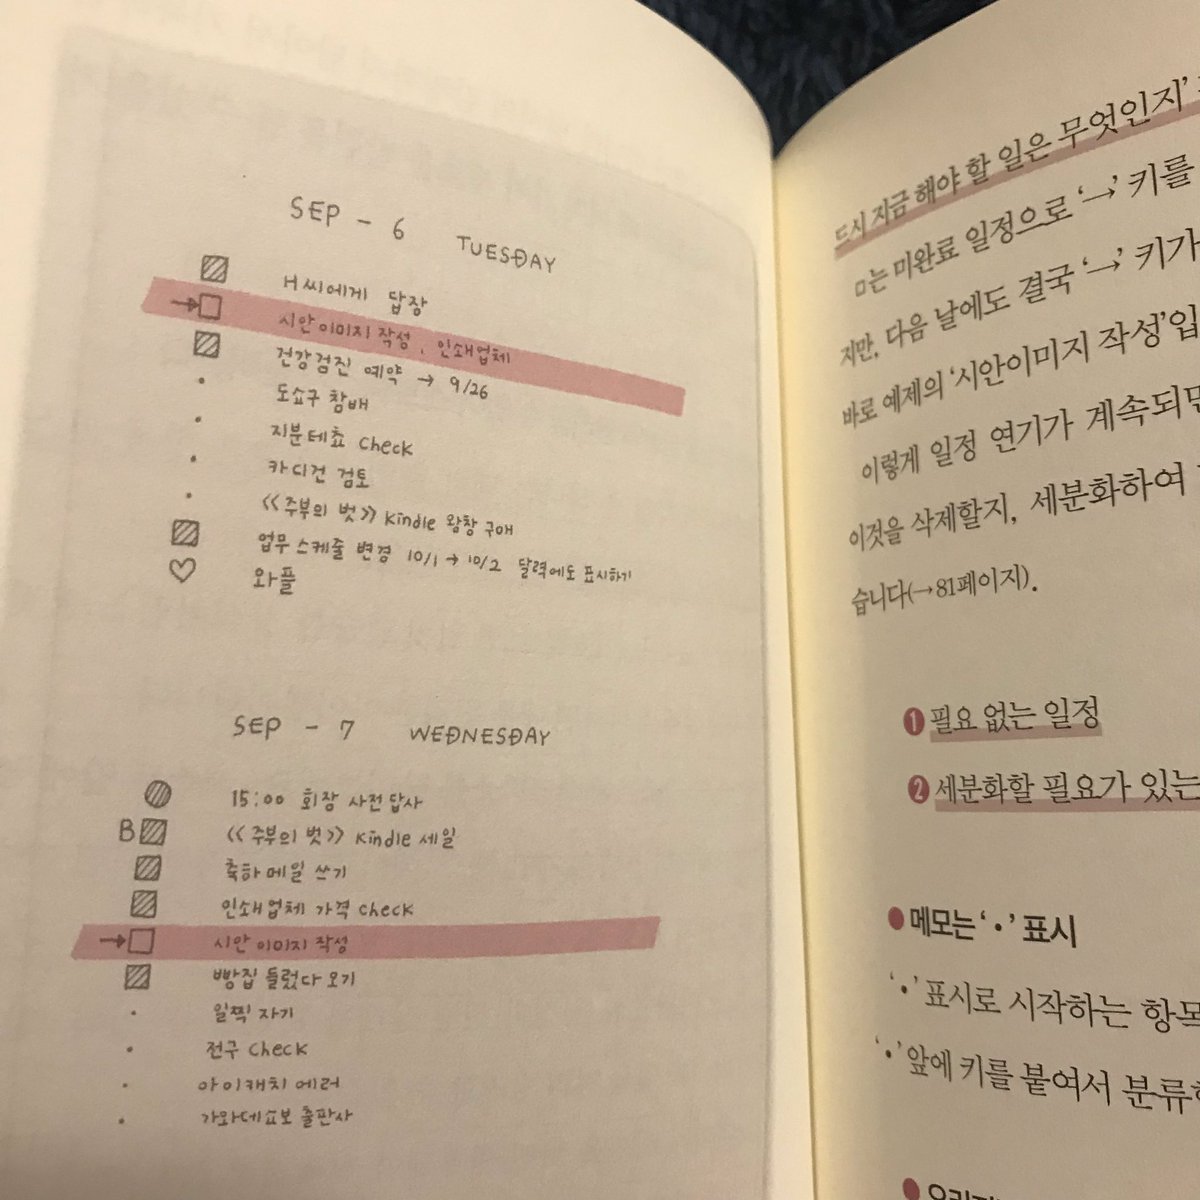 Marie 届きました バレットジャーナル本の韓国語版 나의 첫 불렛저널 表紙カバー裏に ライダーさんの本の案内が載ってて おお となりました ノートの内容例もきれいに翻訳されている 韓国語の勉強にもなりそうです